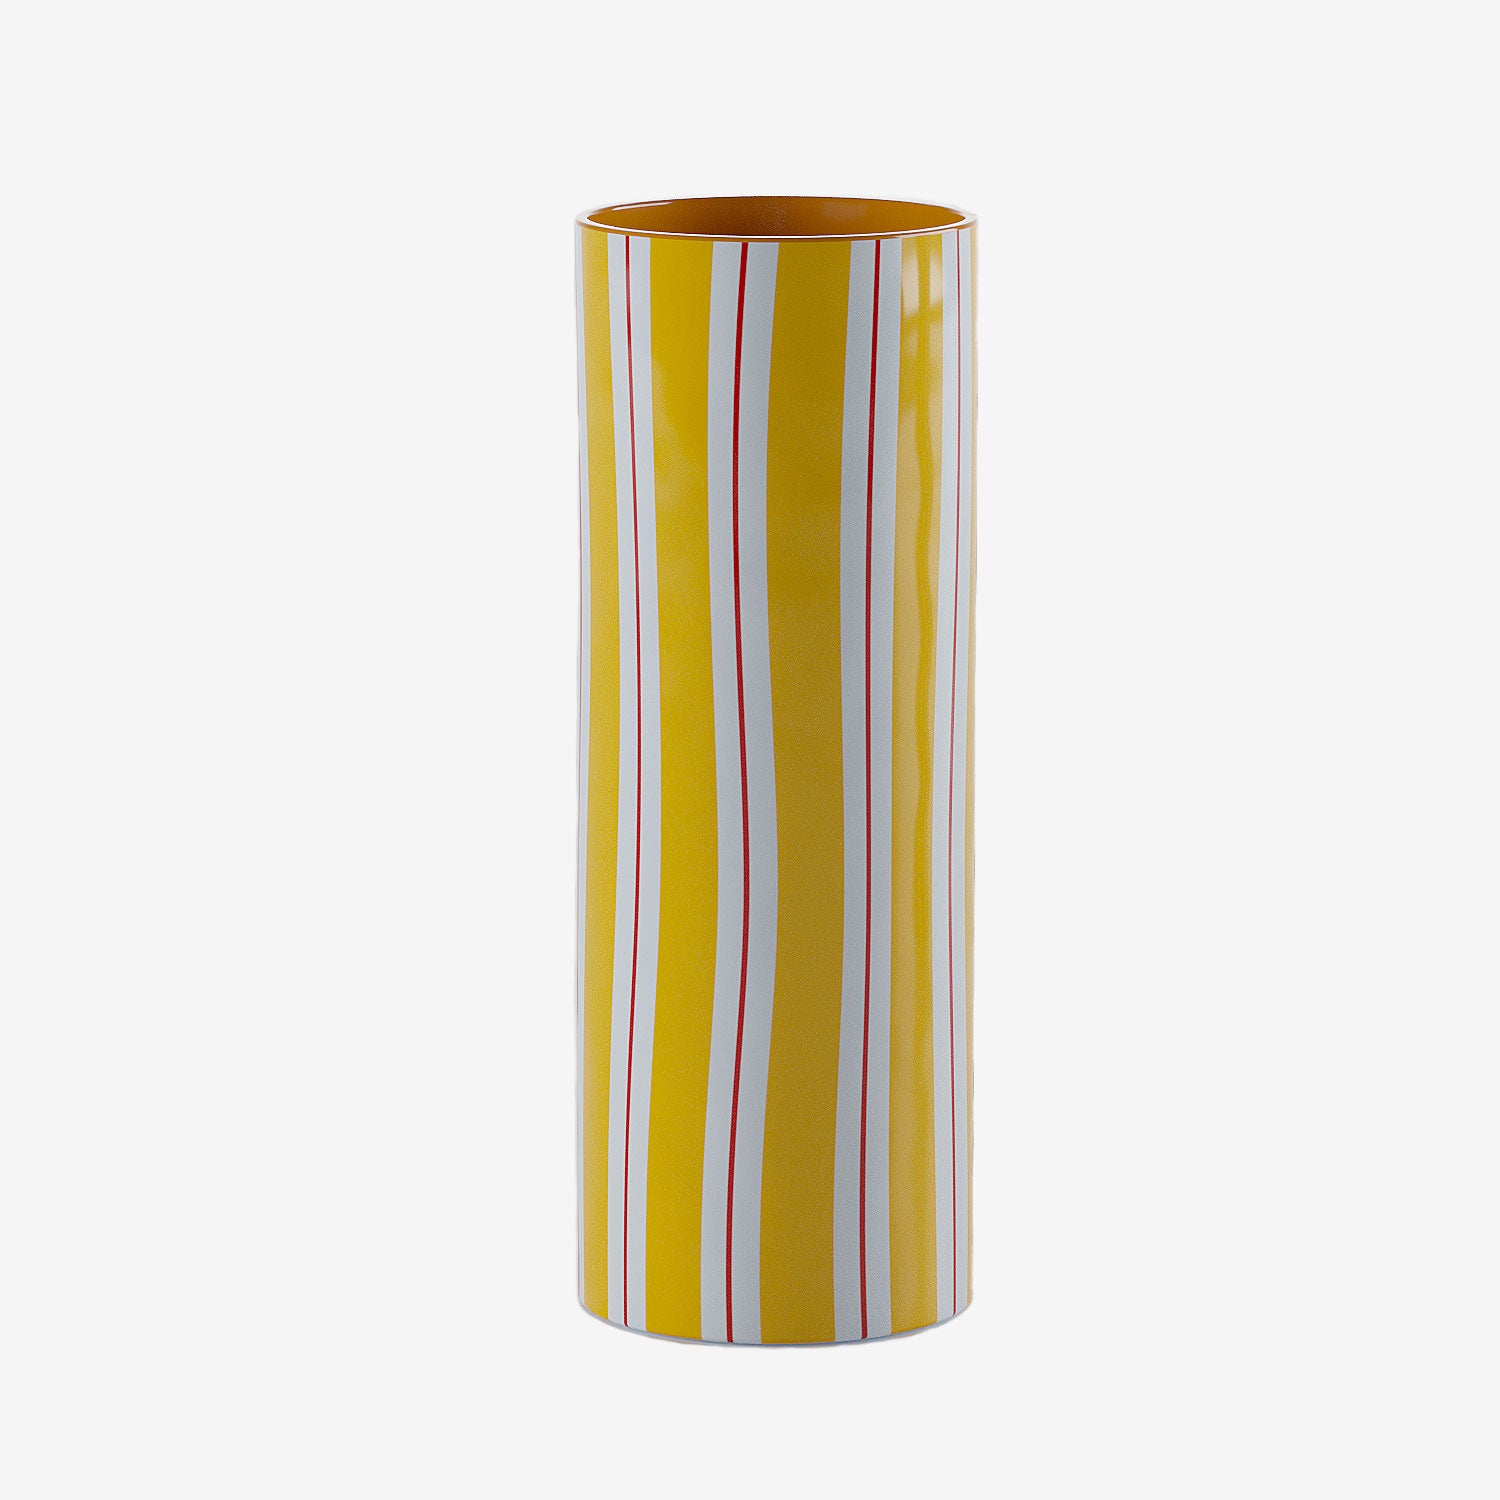 Style bohème ethnique avec le vase haut cylindrique à rayures jaunes